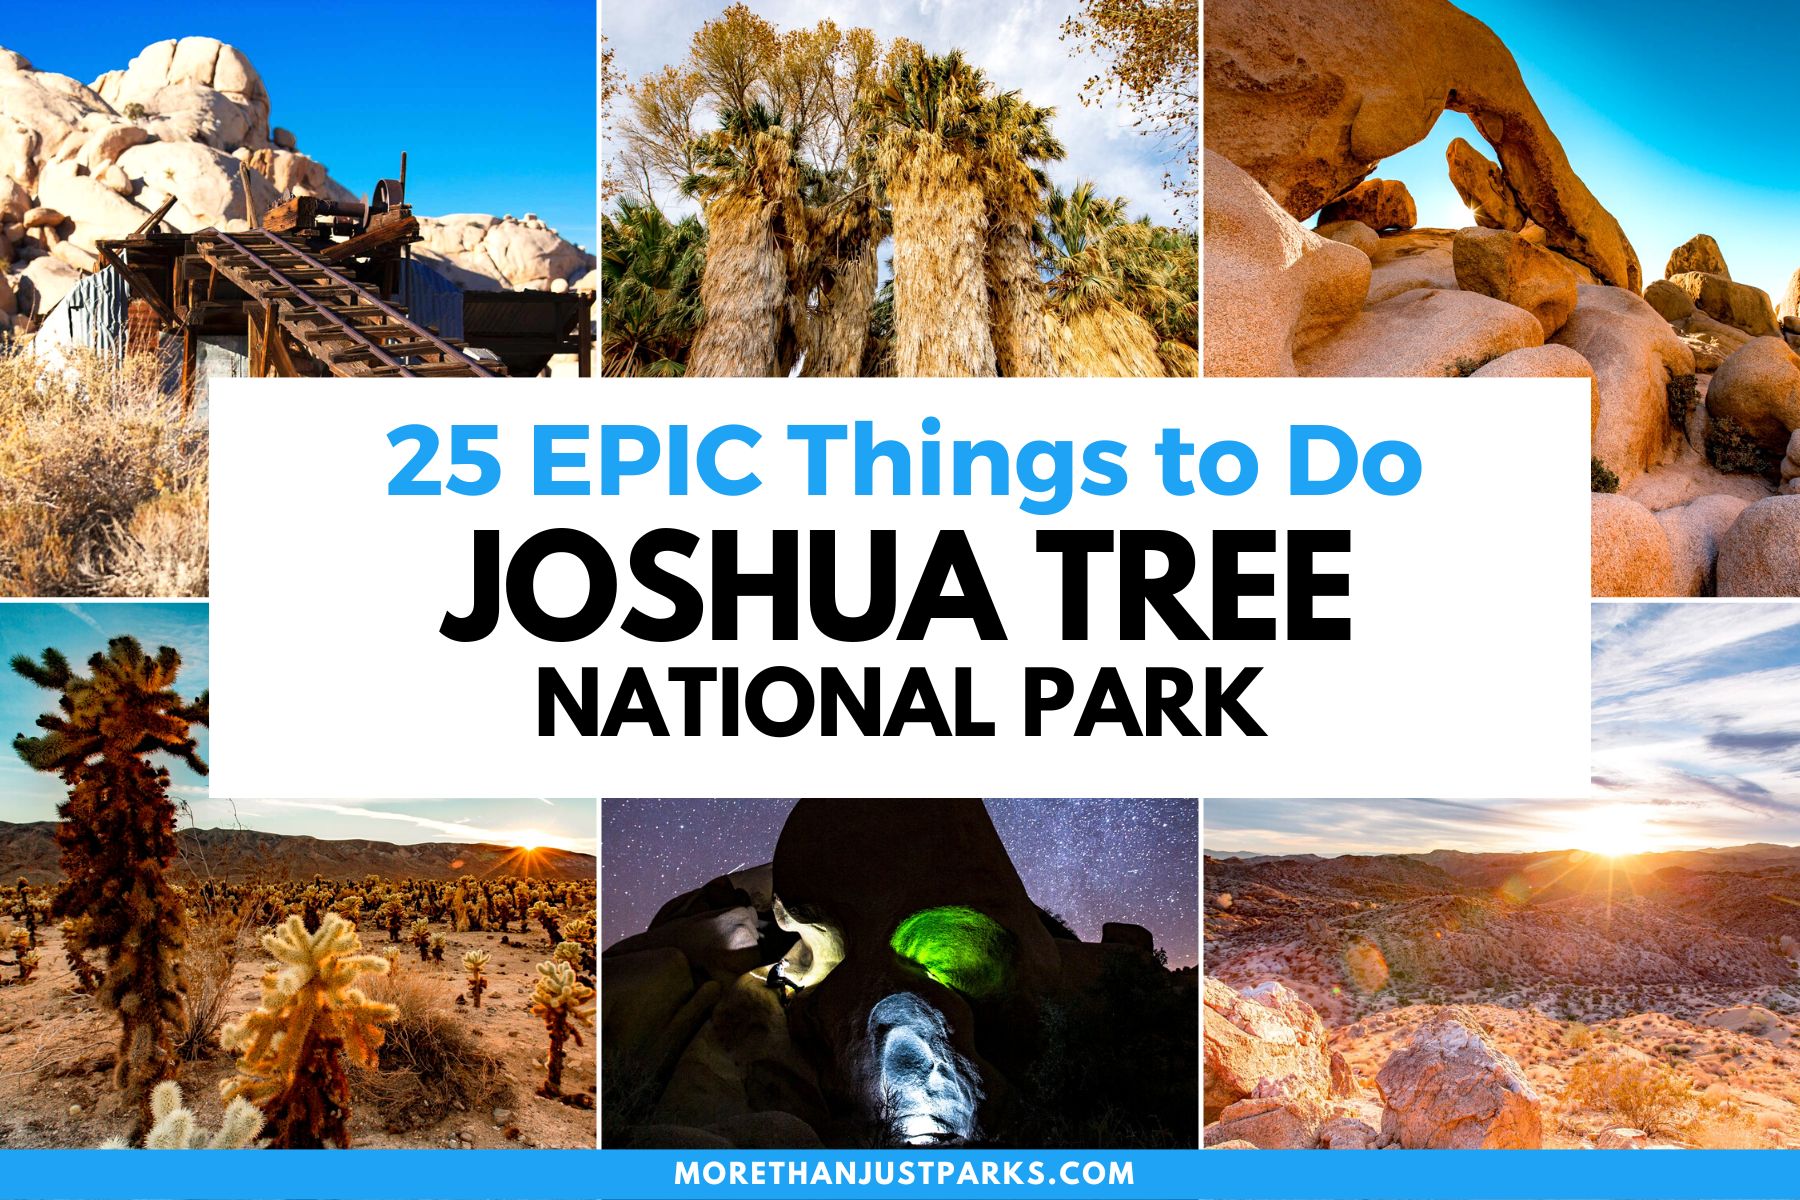 things to do joshua tree national park california, things to do joshua tree, joshua tree national park activities, visiting joshua tree